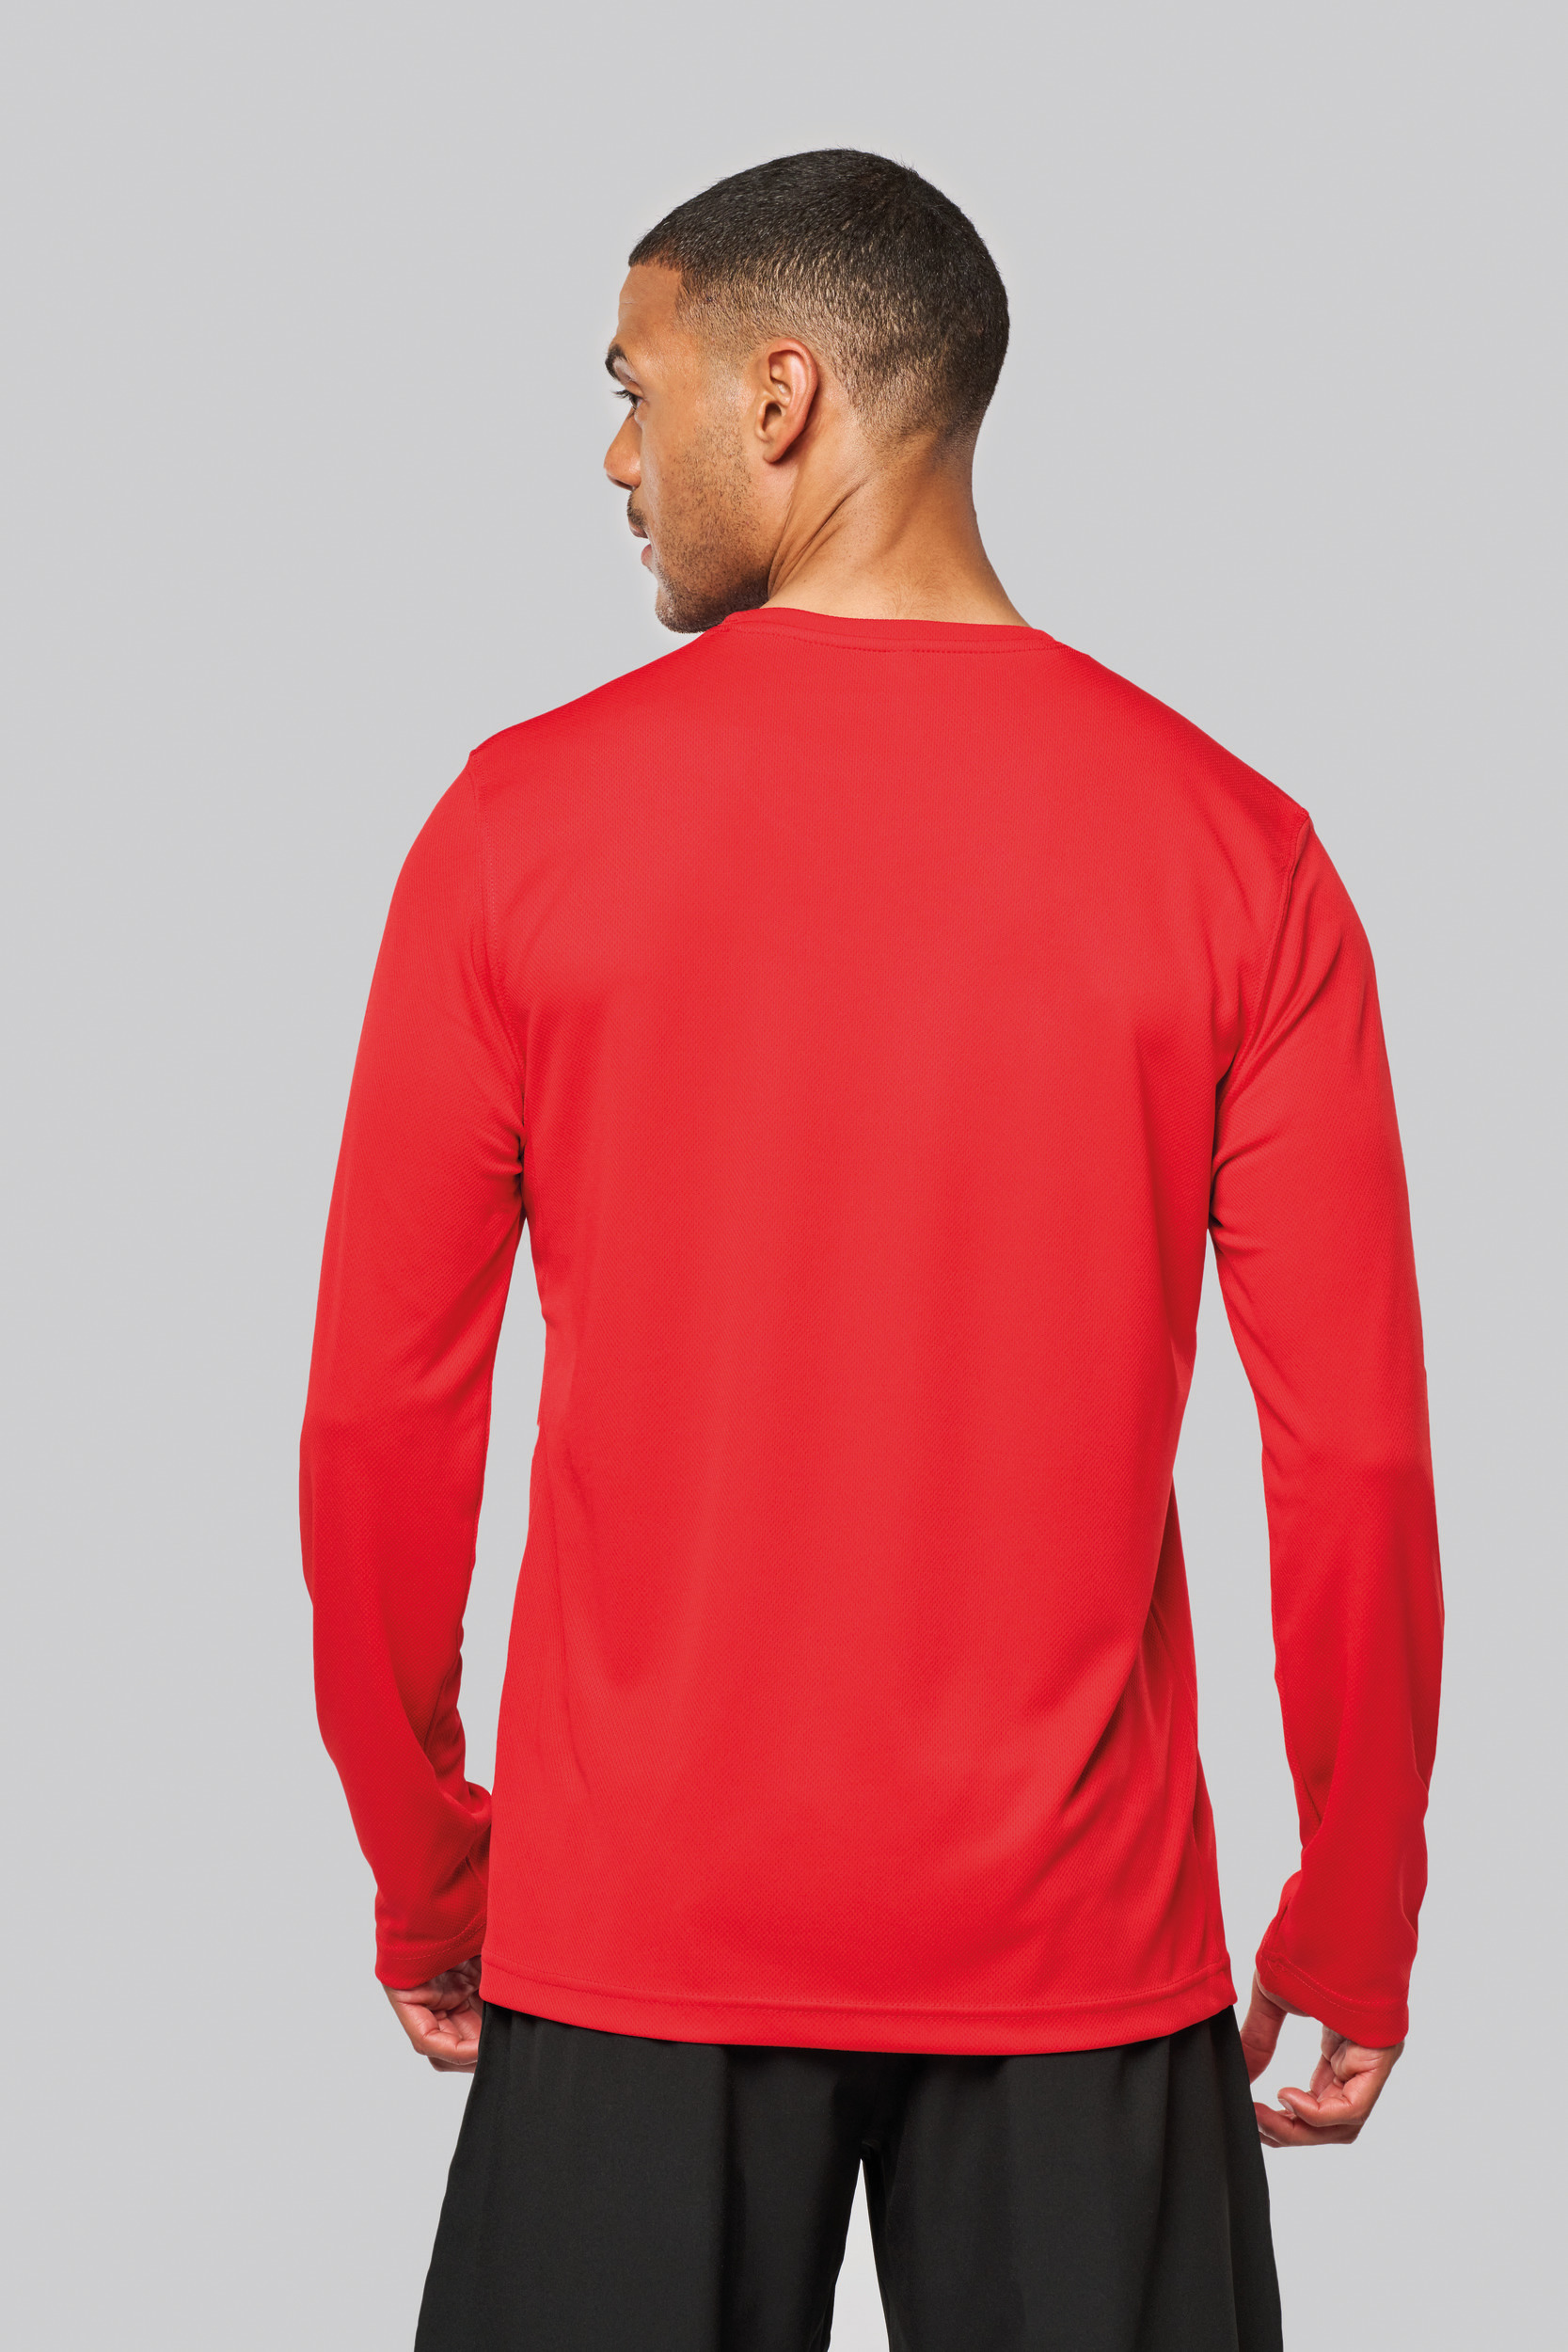 Camisetas Deportivas para Hombre - Máximo Rendimiento con gef